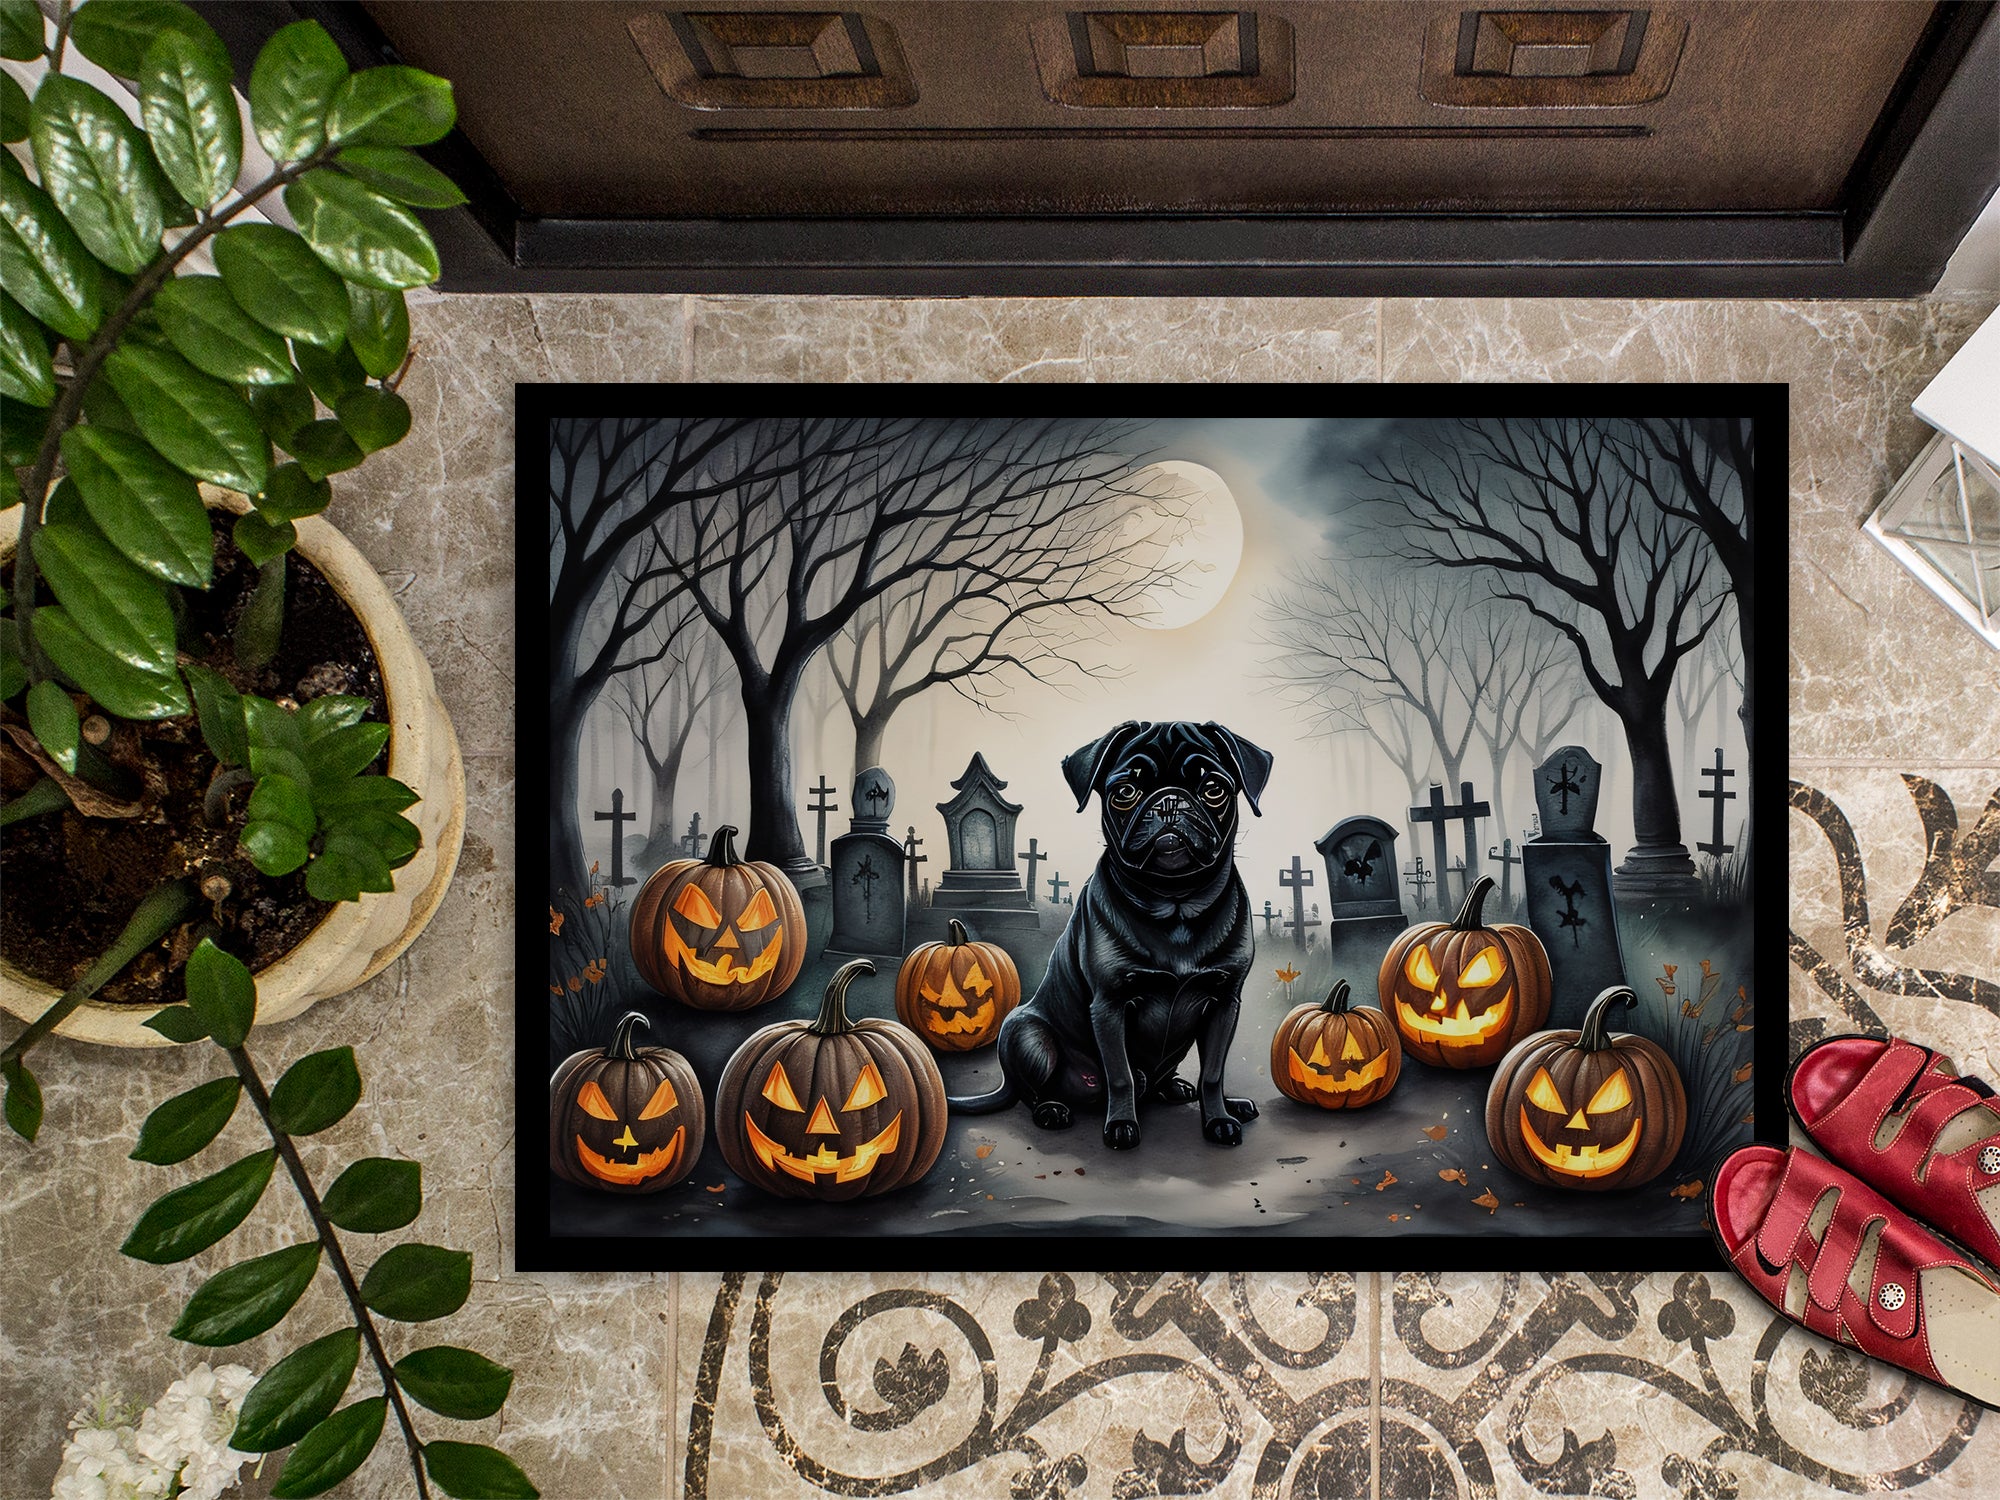 Black Pug Spooky Halloween Doormat 18x27